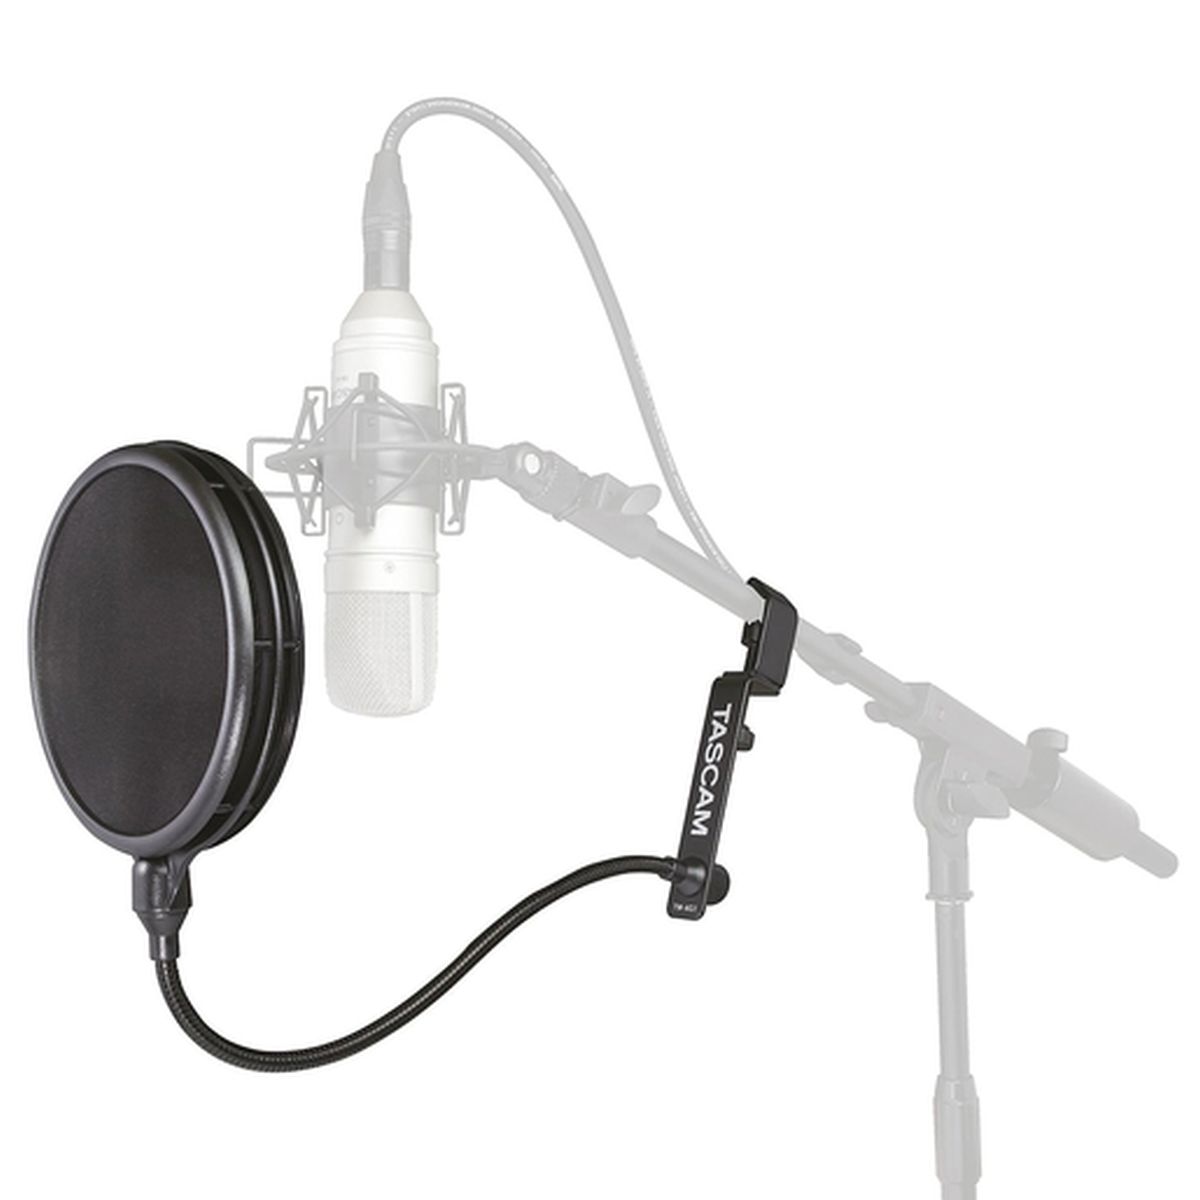 Tascam TM-AG1 Mikrofon-Popschutz